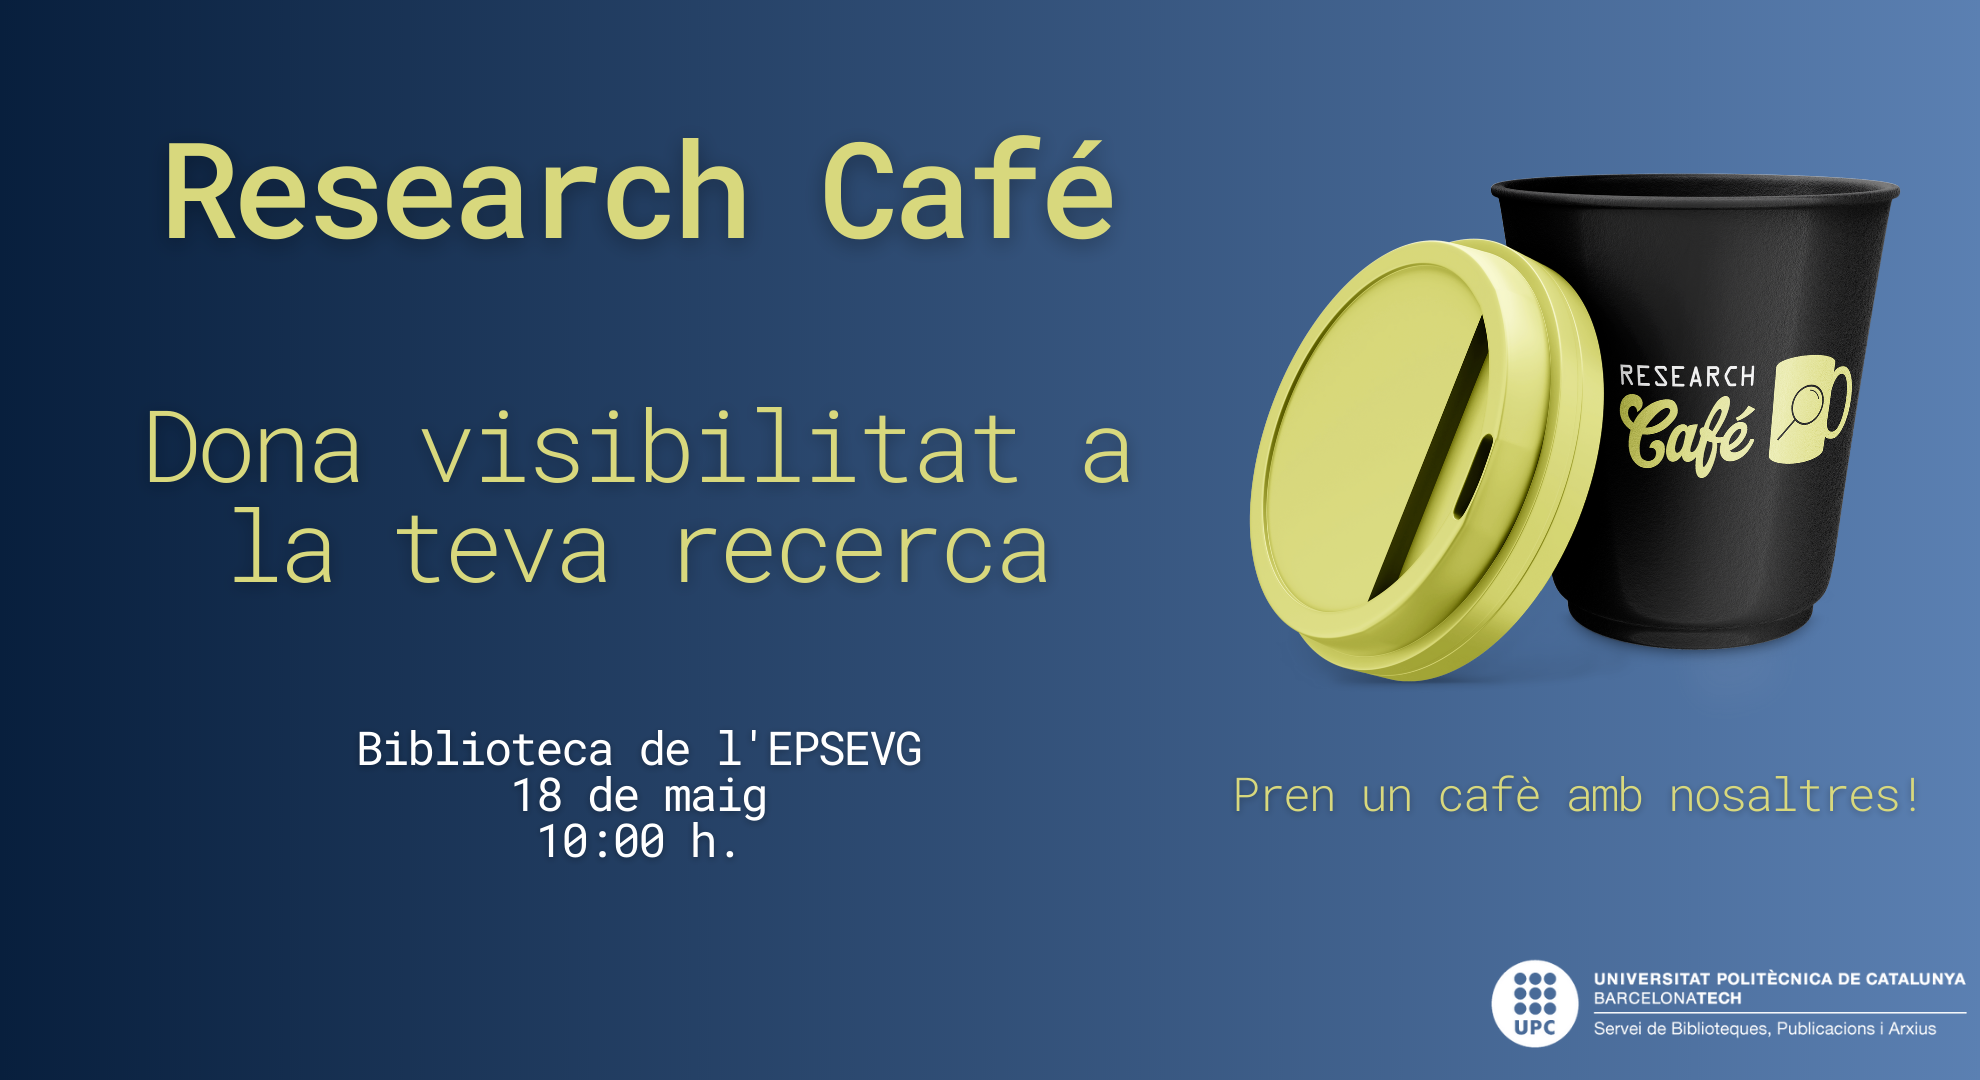 BEPSEVG. Research Café UPC Vilanova : Dona visibilitat a la teva recerca!